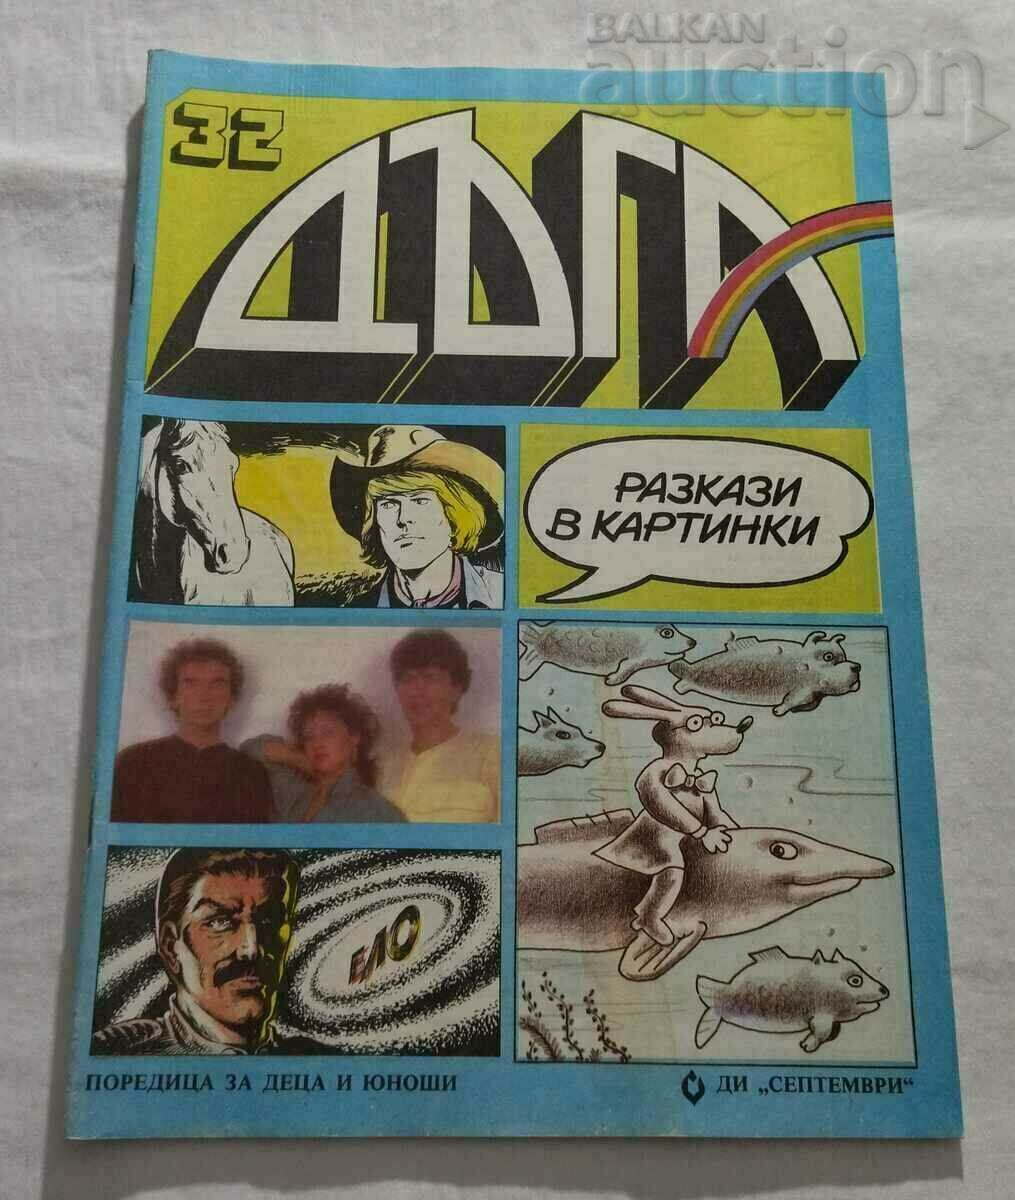 RAINBOW Nr. 32 1988 REVISTA DE AFIȘE PENTRU COPII ȘI TINERI